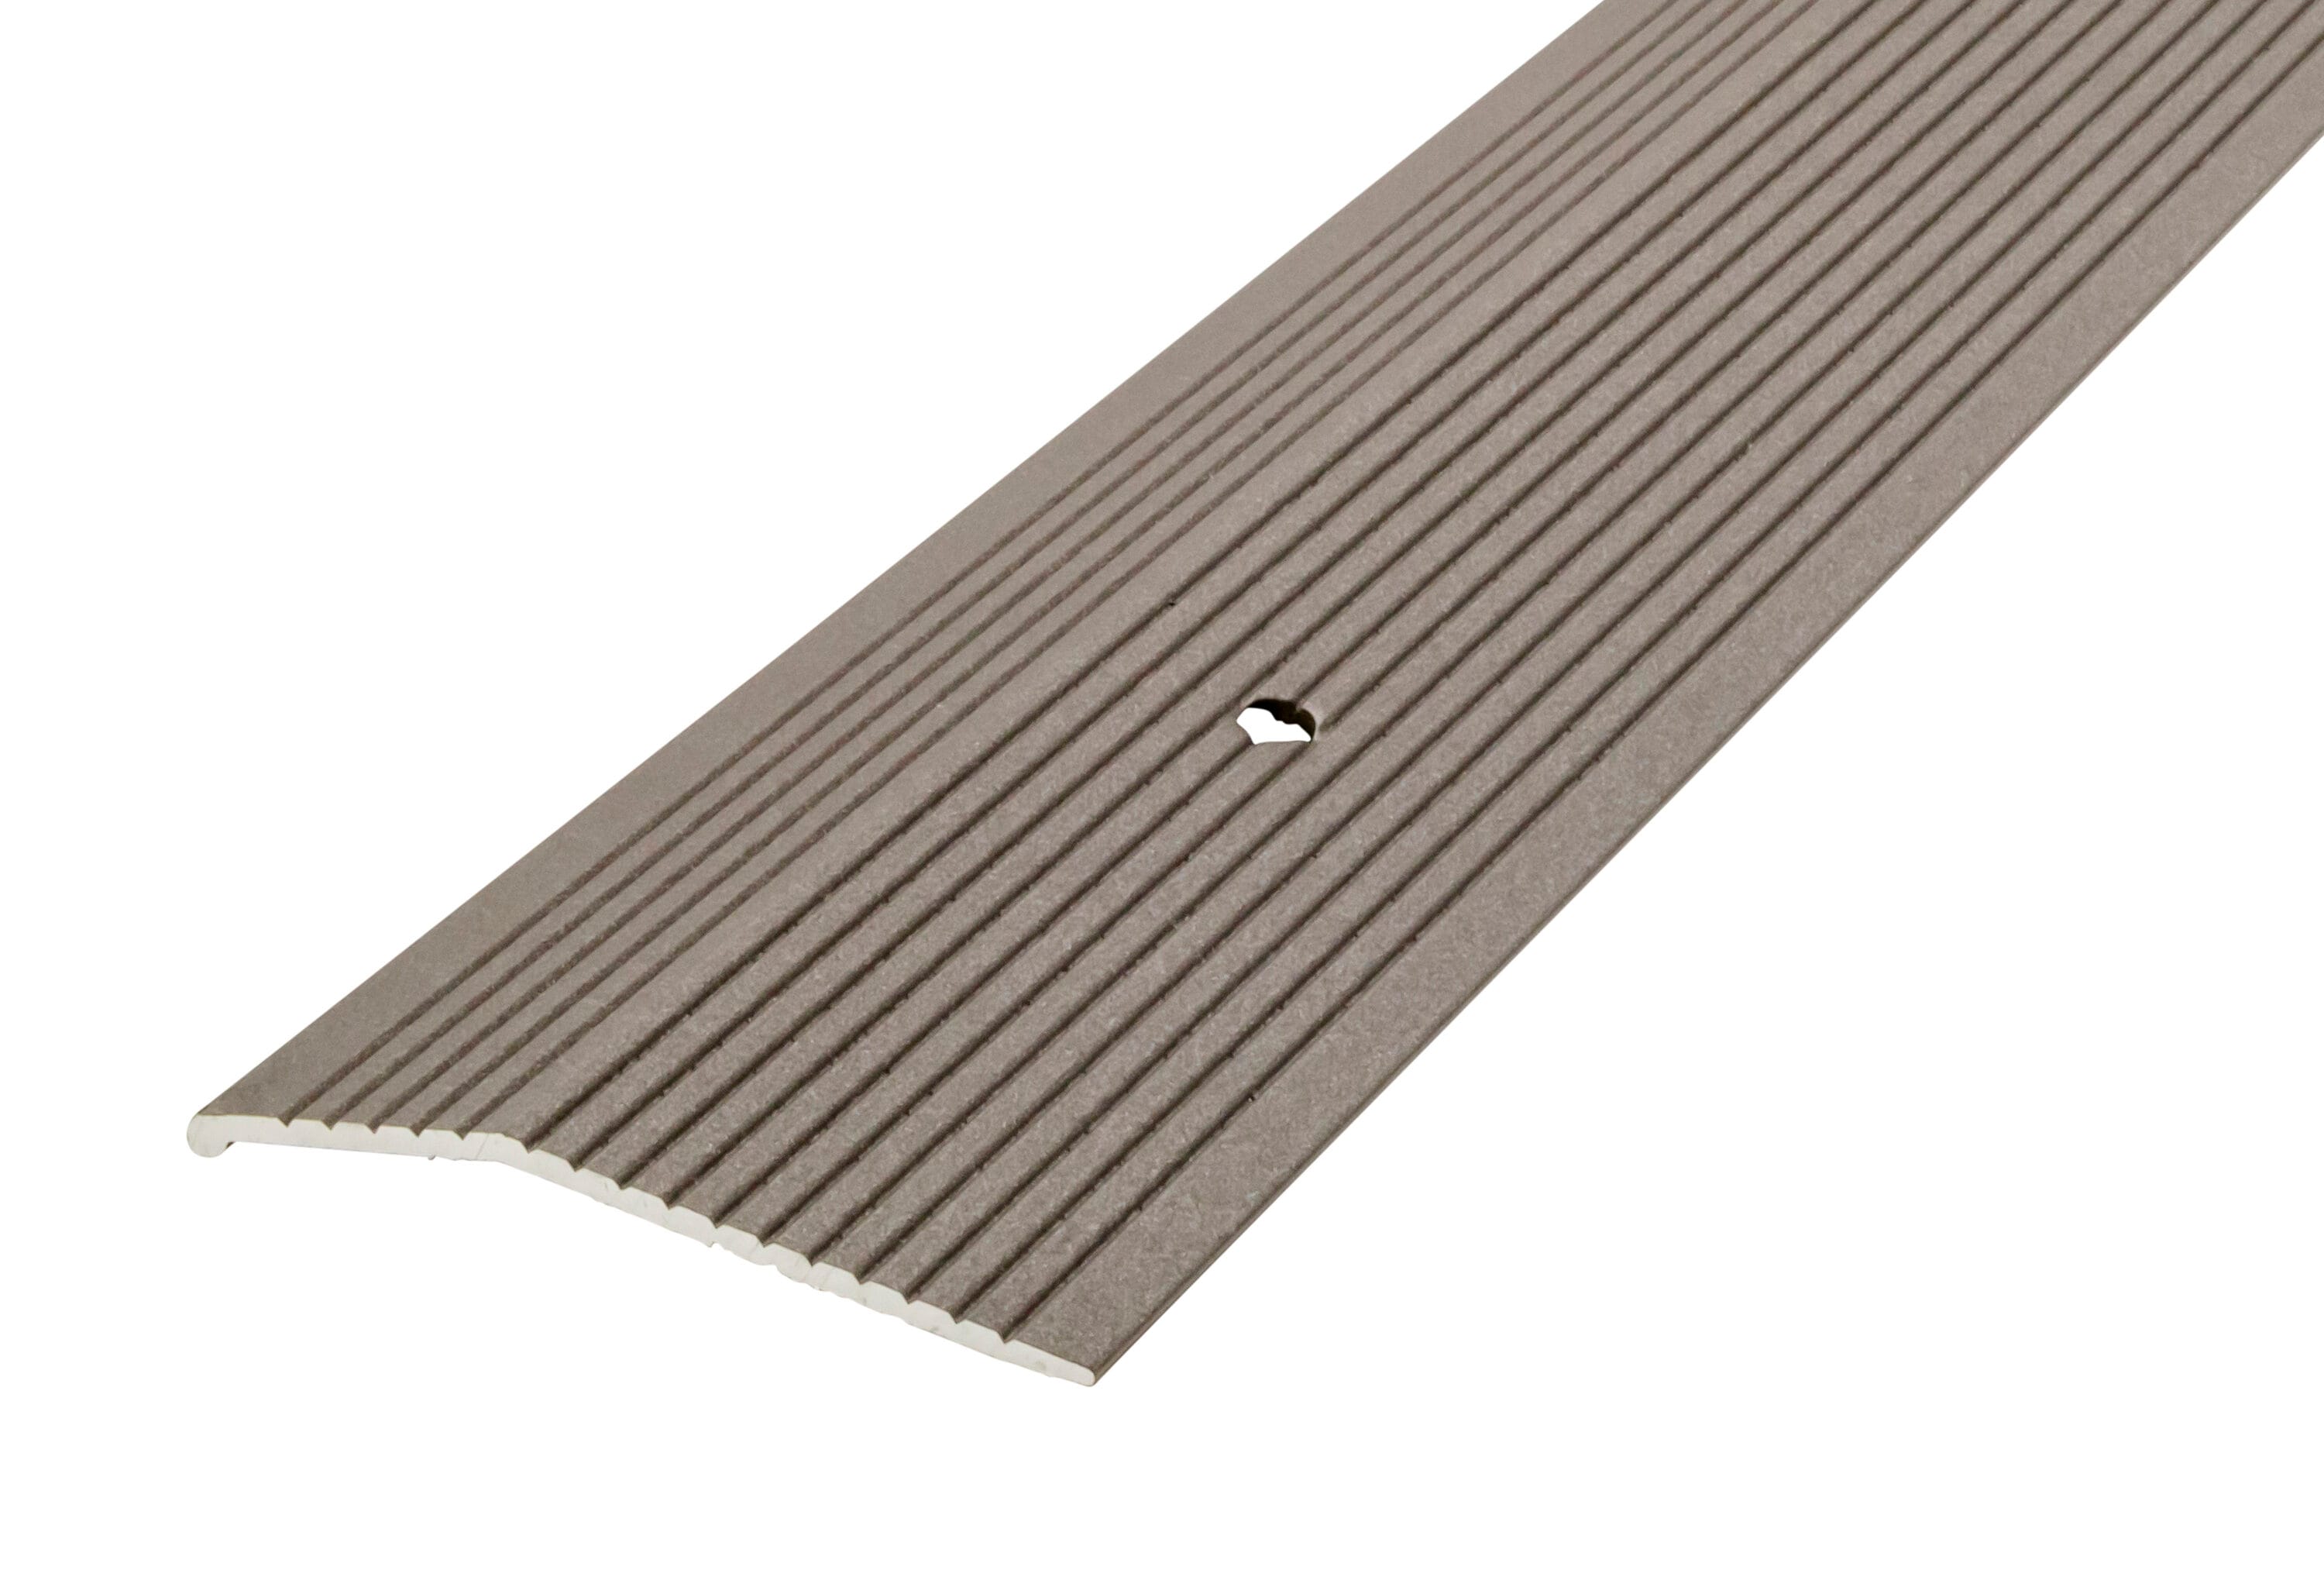 Carpet Edge Strip Carpet tack Strip Carpet Binding Tape Carpet Adhesive  Transition Strip Floor Flat Divider Strip Carpet Edging Trim Tile Flooring  Edging Trim PVC Flexible Strap 